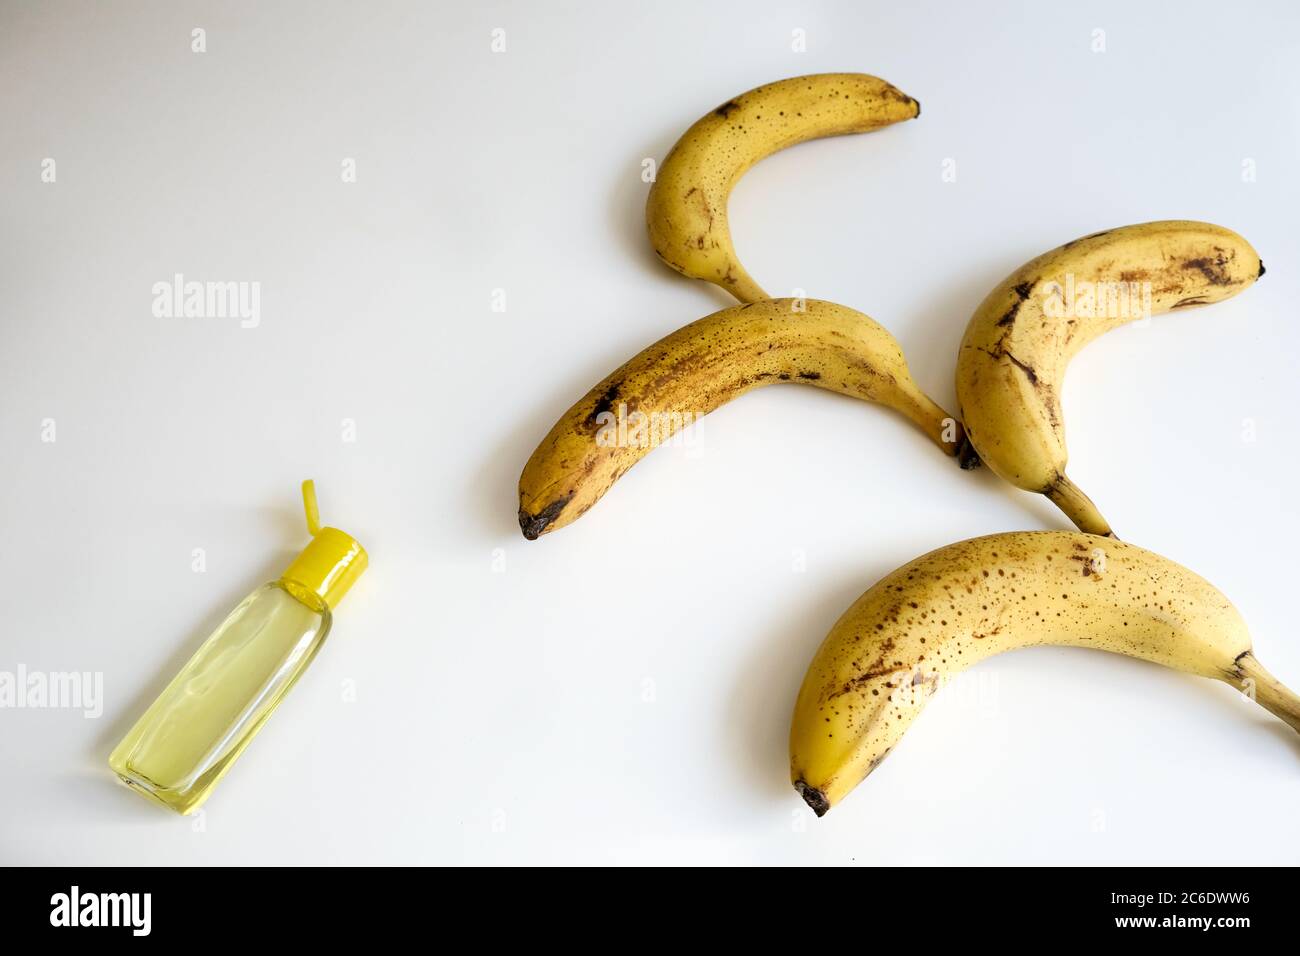 Concept créatif pour l'épidémie de coronavirus. Bouquet de bananes mûres à pois et bouteille ouverte de désinfectant jaune pour les mains. Table blanche avec espace vide Banque D'Images